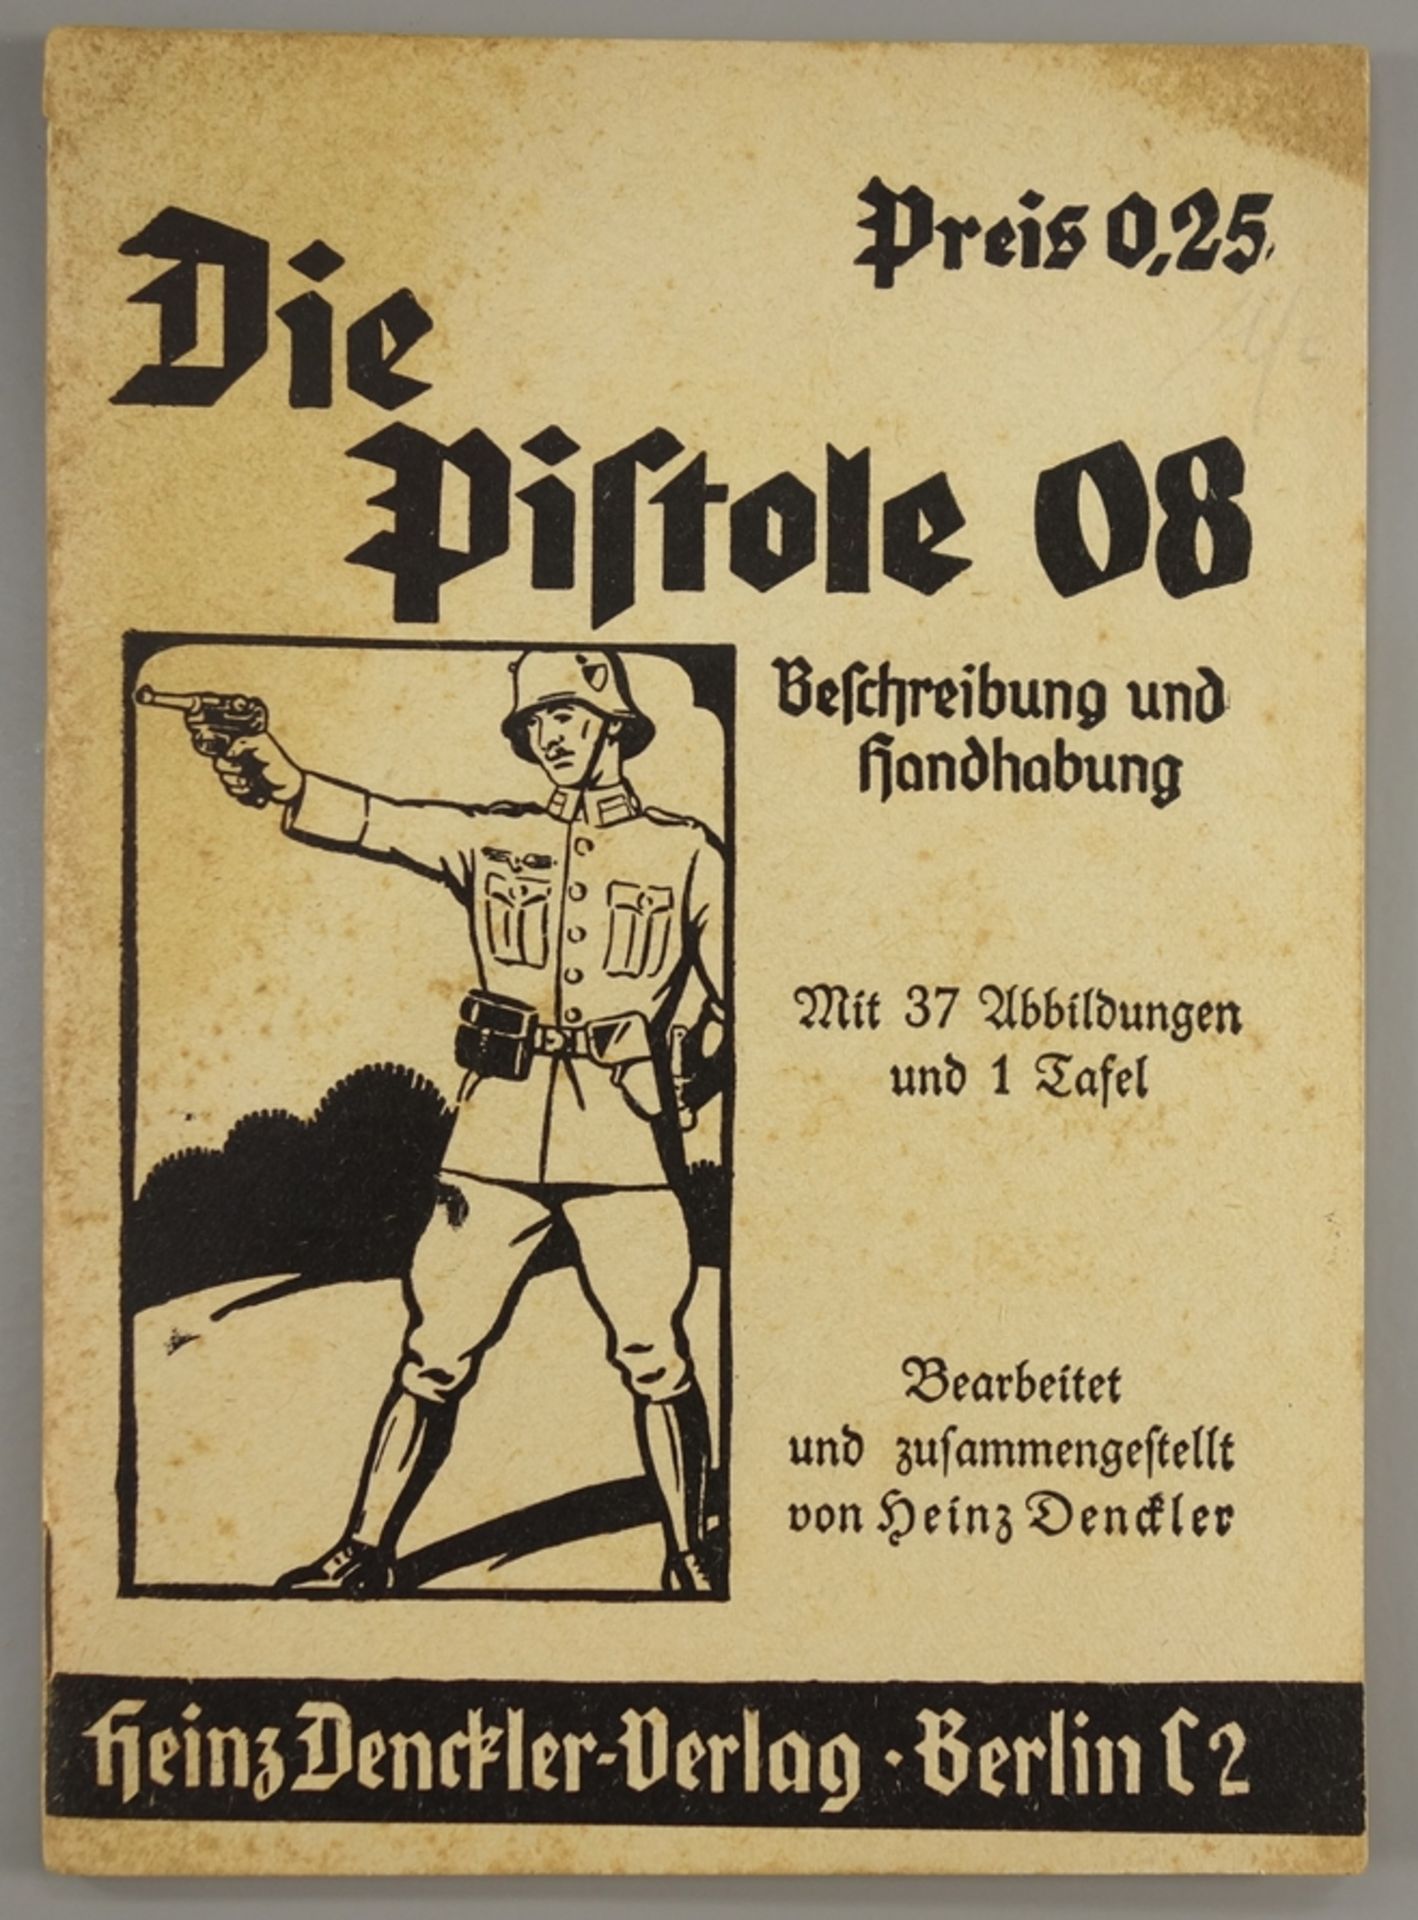 Die Pistole 08, Heinz Denckler Verlag, Berlin, 6.Auflage, WK II, originale Beschreibung und